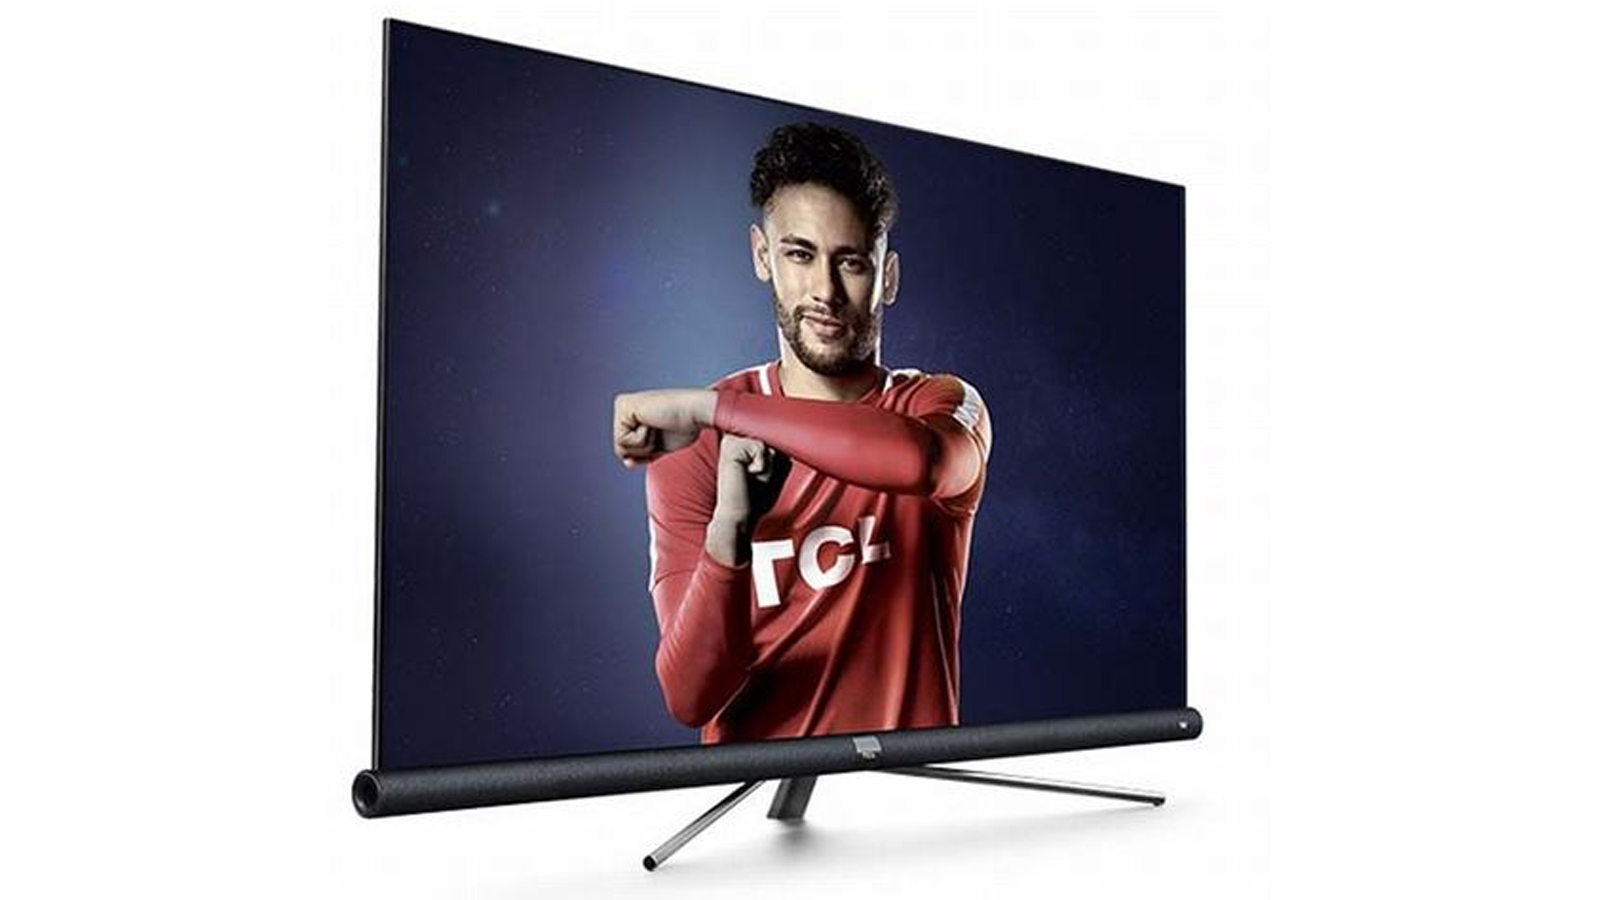 🔥 Smart TV TCL 4K UHD 55 avec Barre de son JBL à 599,99€, soit